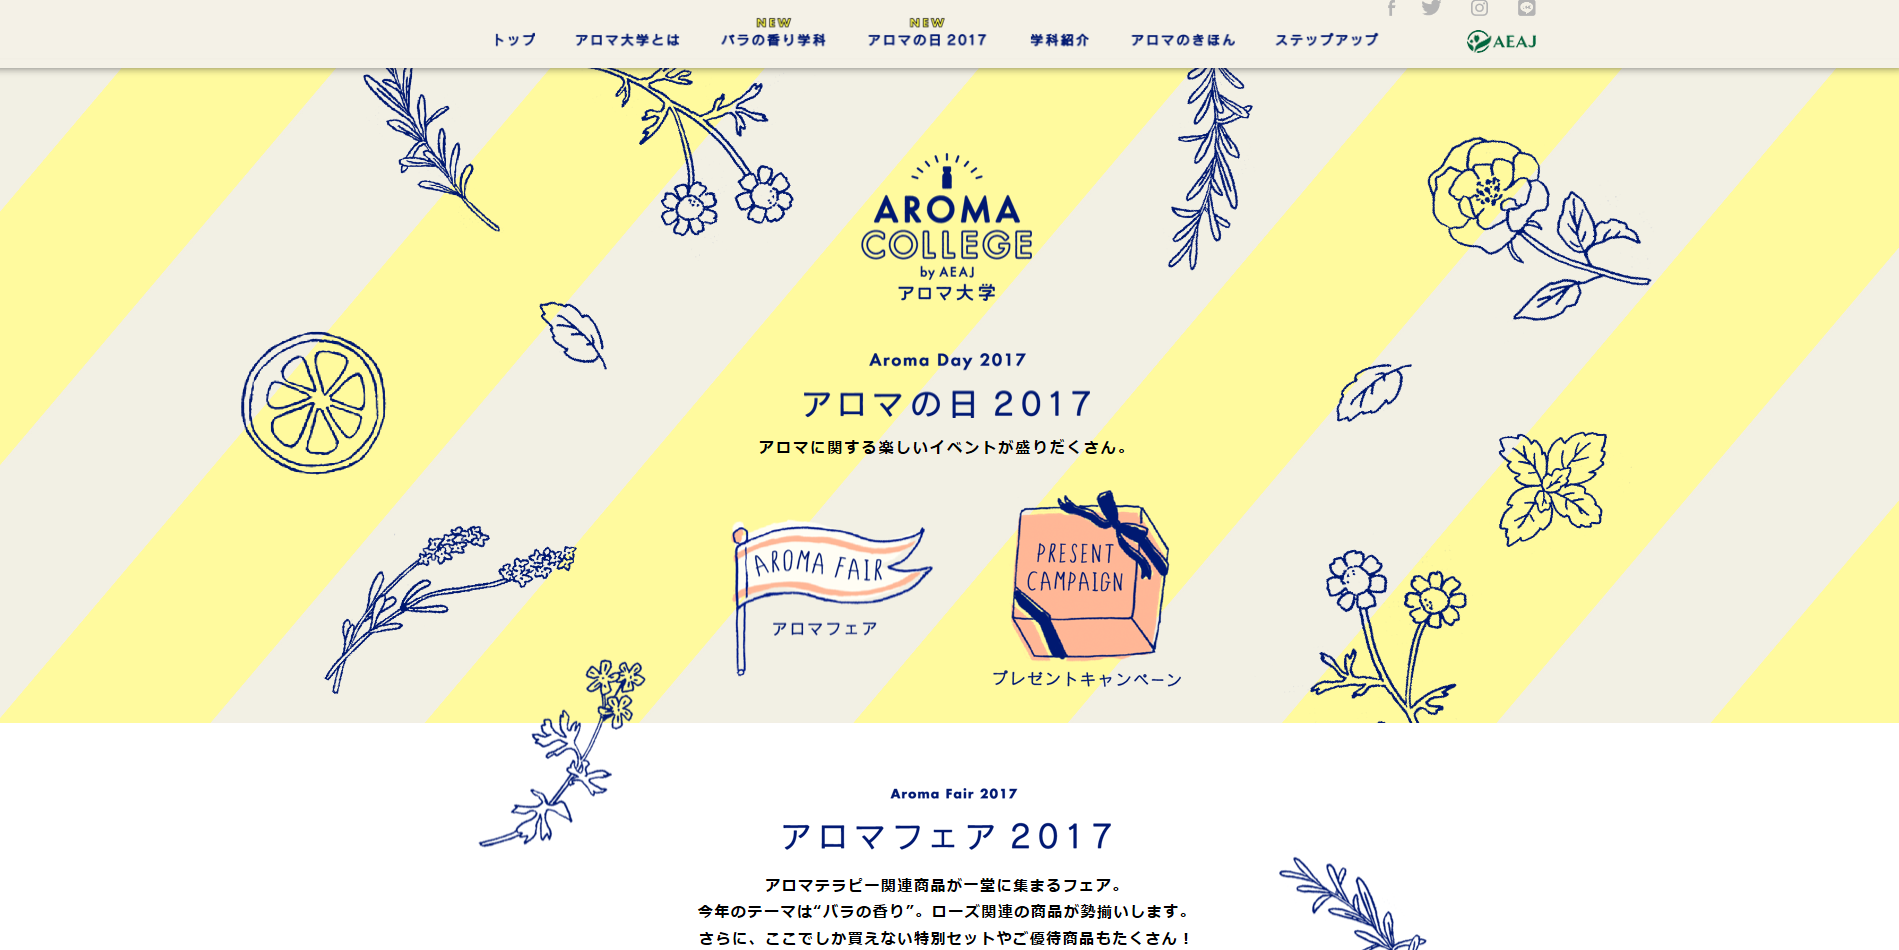 大阪で開催されるアロマフェア！充実のアロマセミナーをチェック！